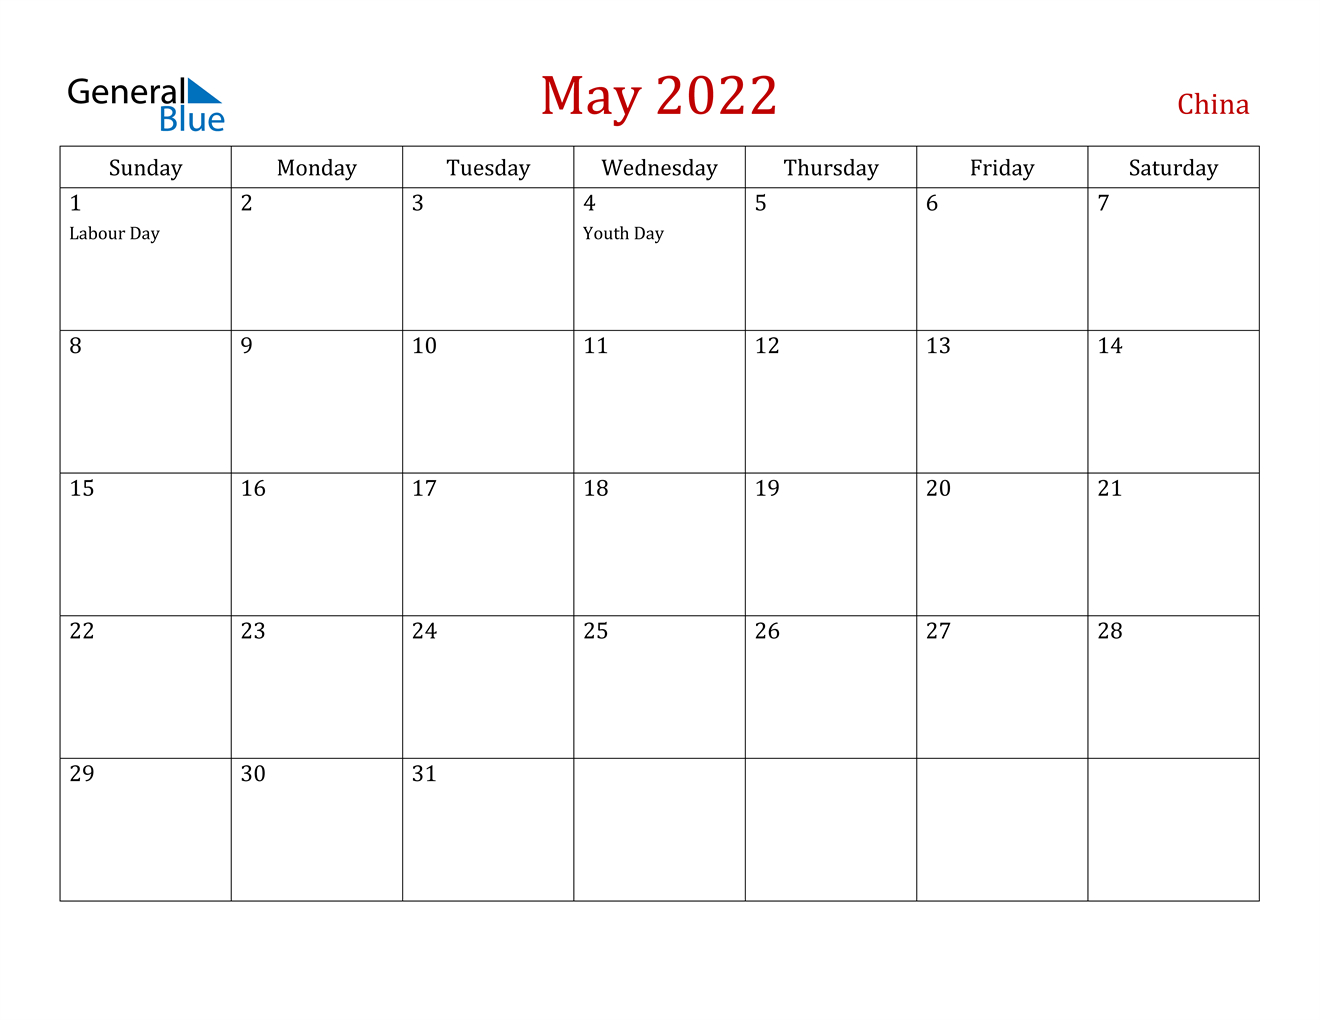 May 2022 Calendar - China